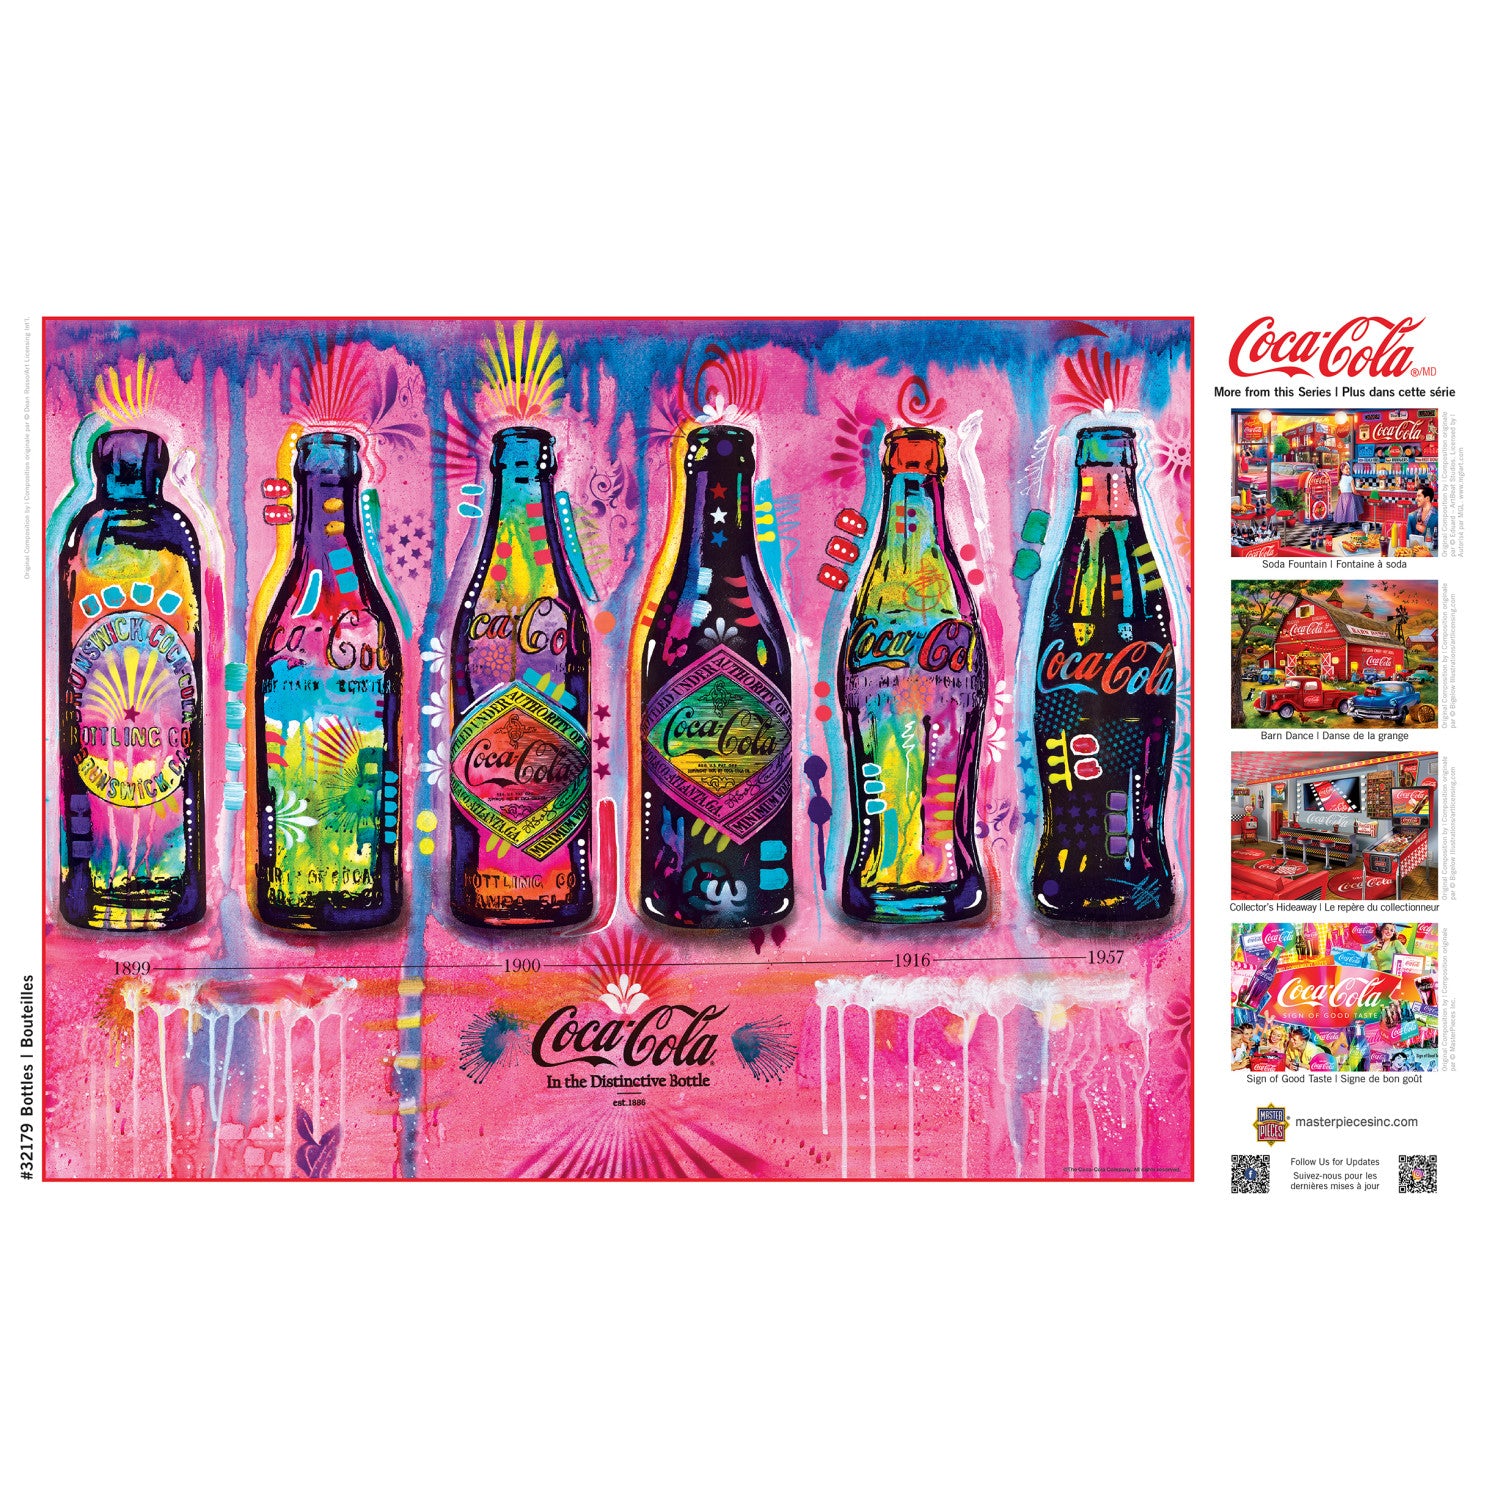 Coca-Cola - Bottles 300 Piece EZ Grip Jigsaw Puzzle